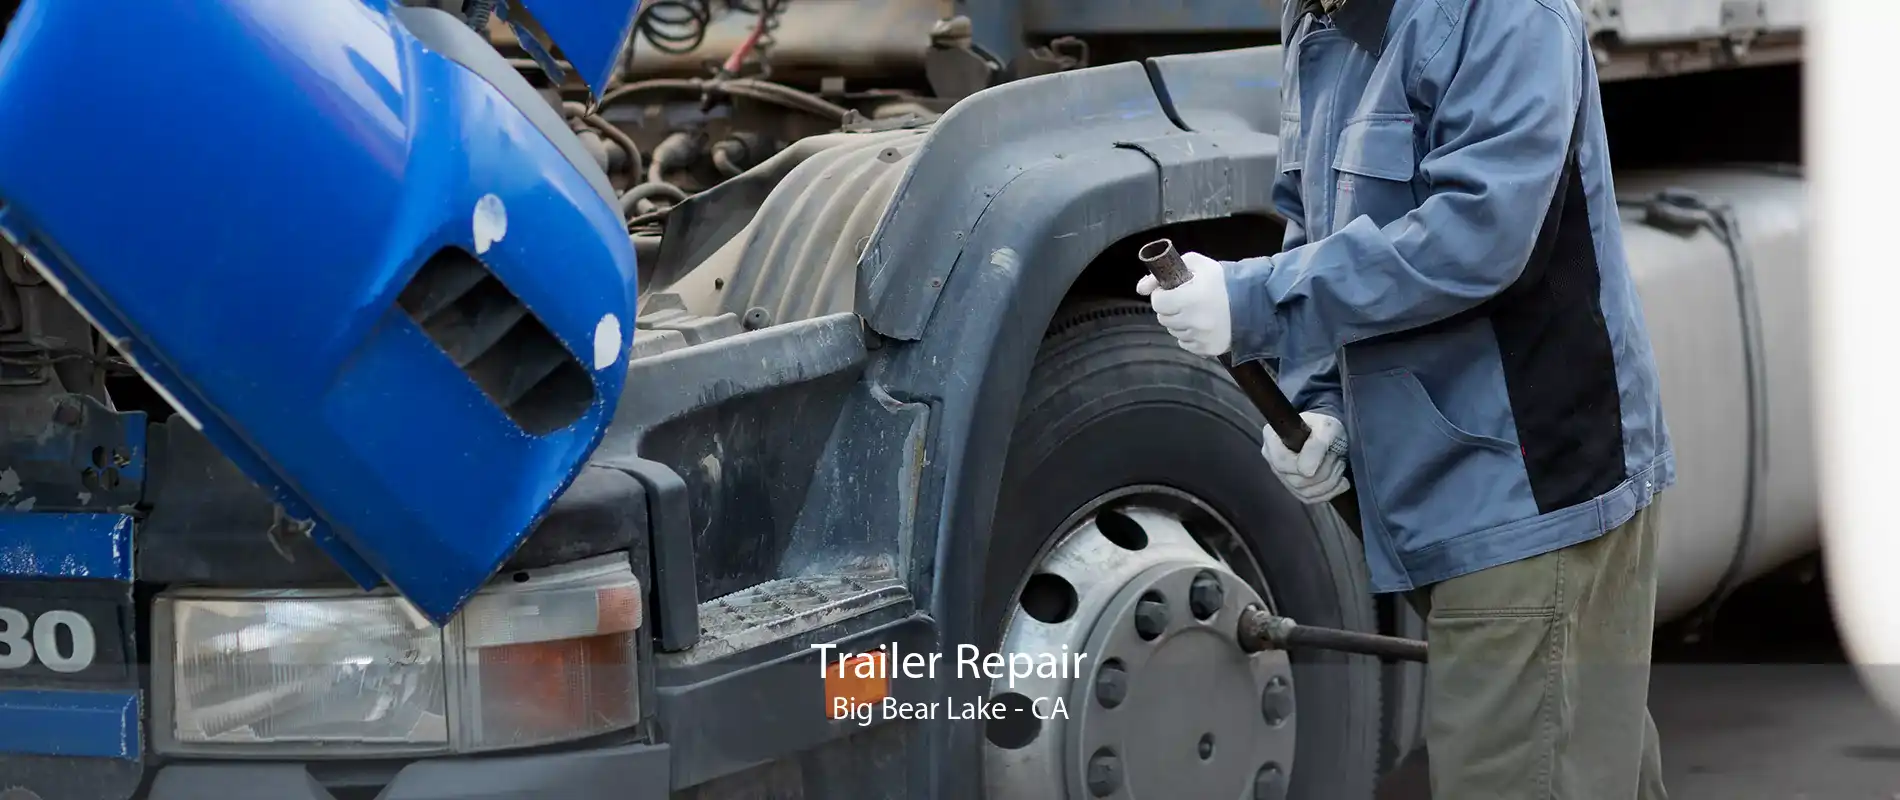 Trailer Repair Big Bear Lake - CA